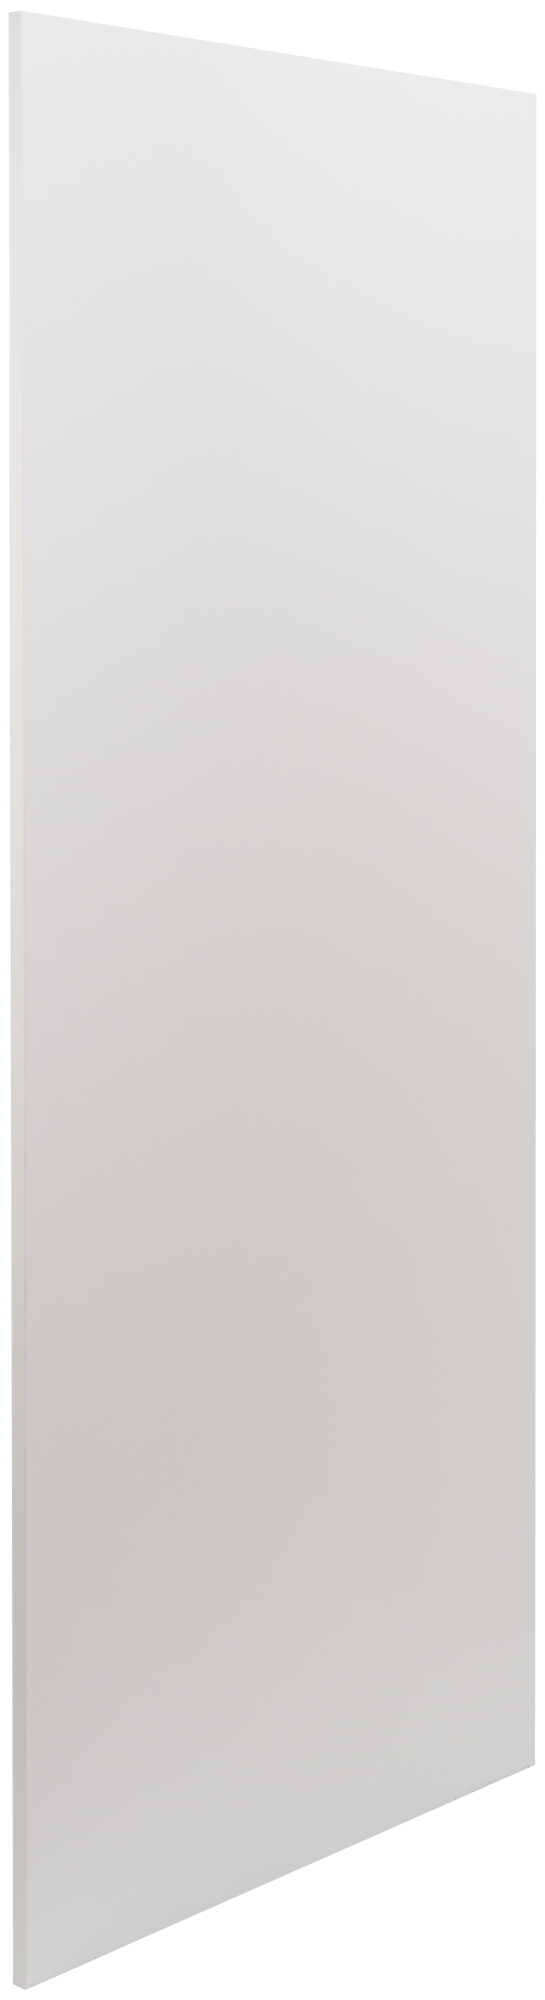 Costado delinia id mikonos blanco 183,6x76,8 cm